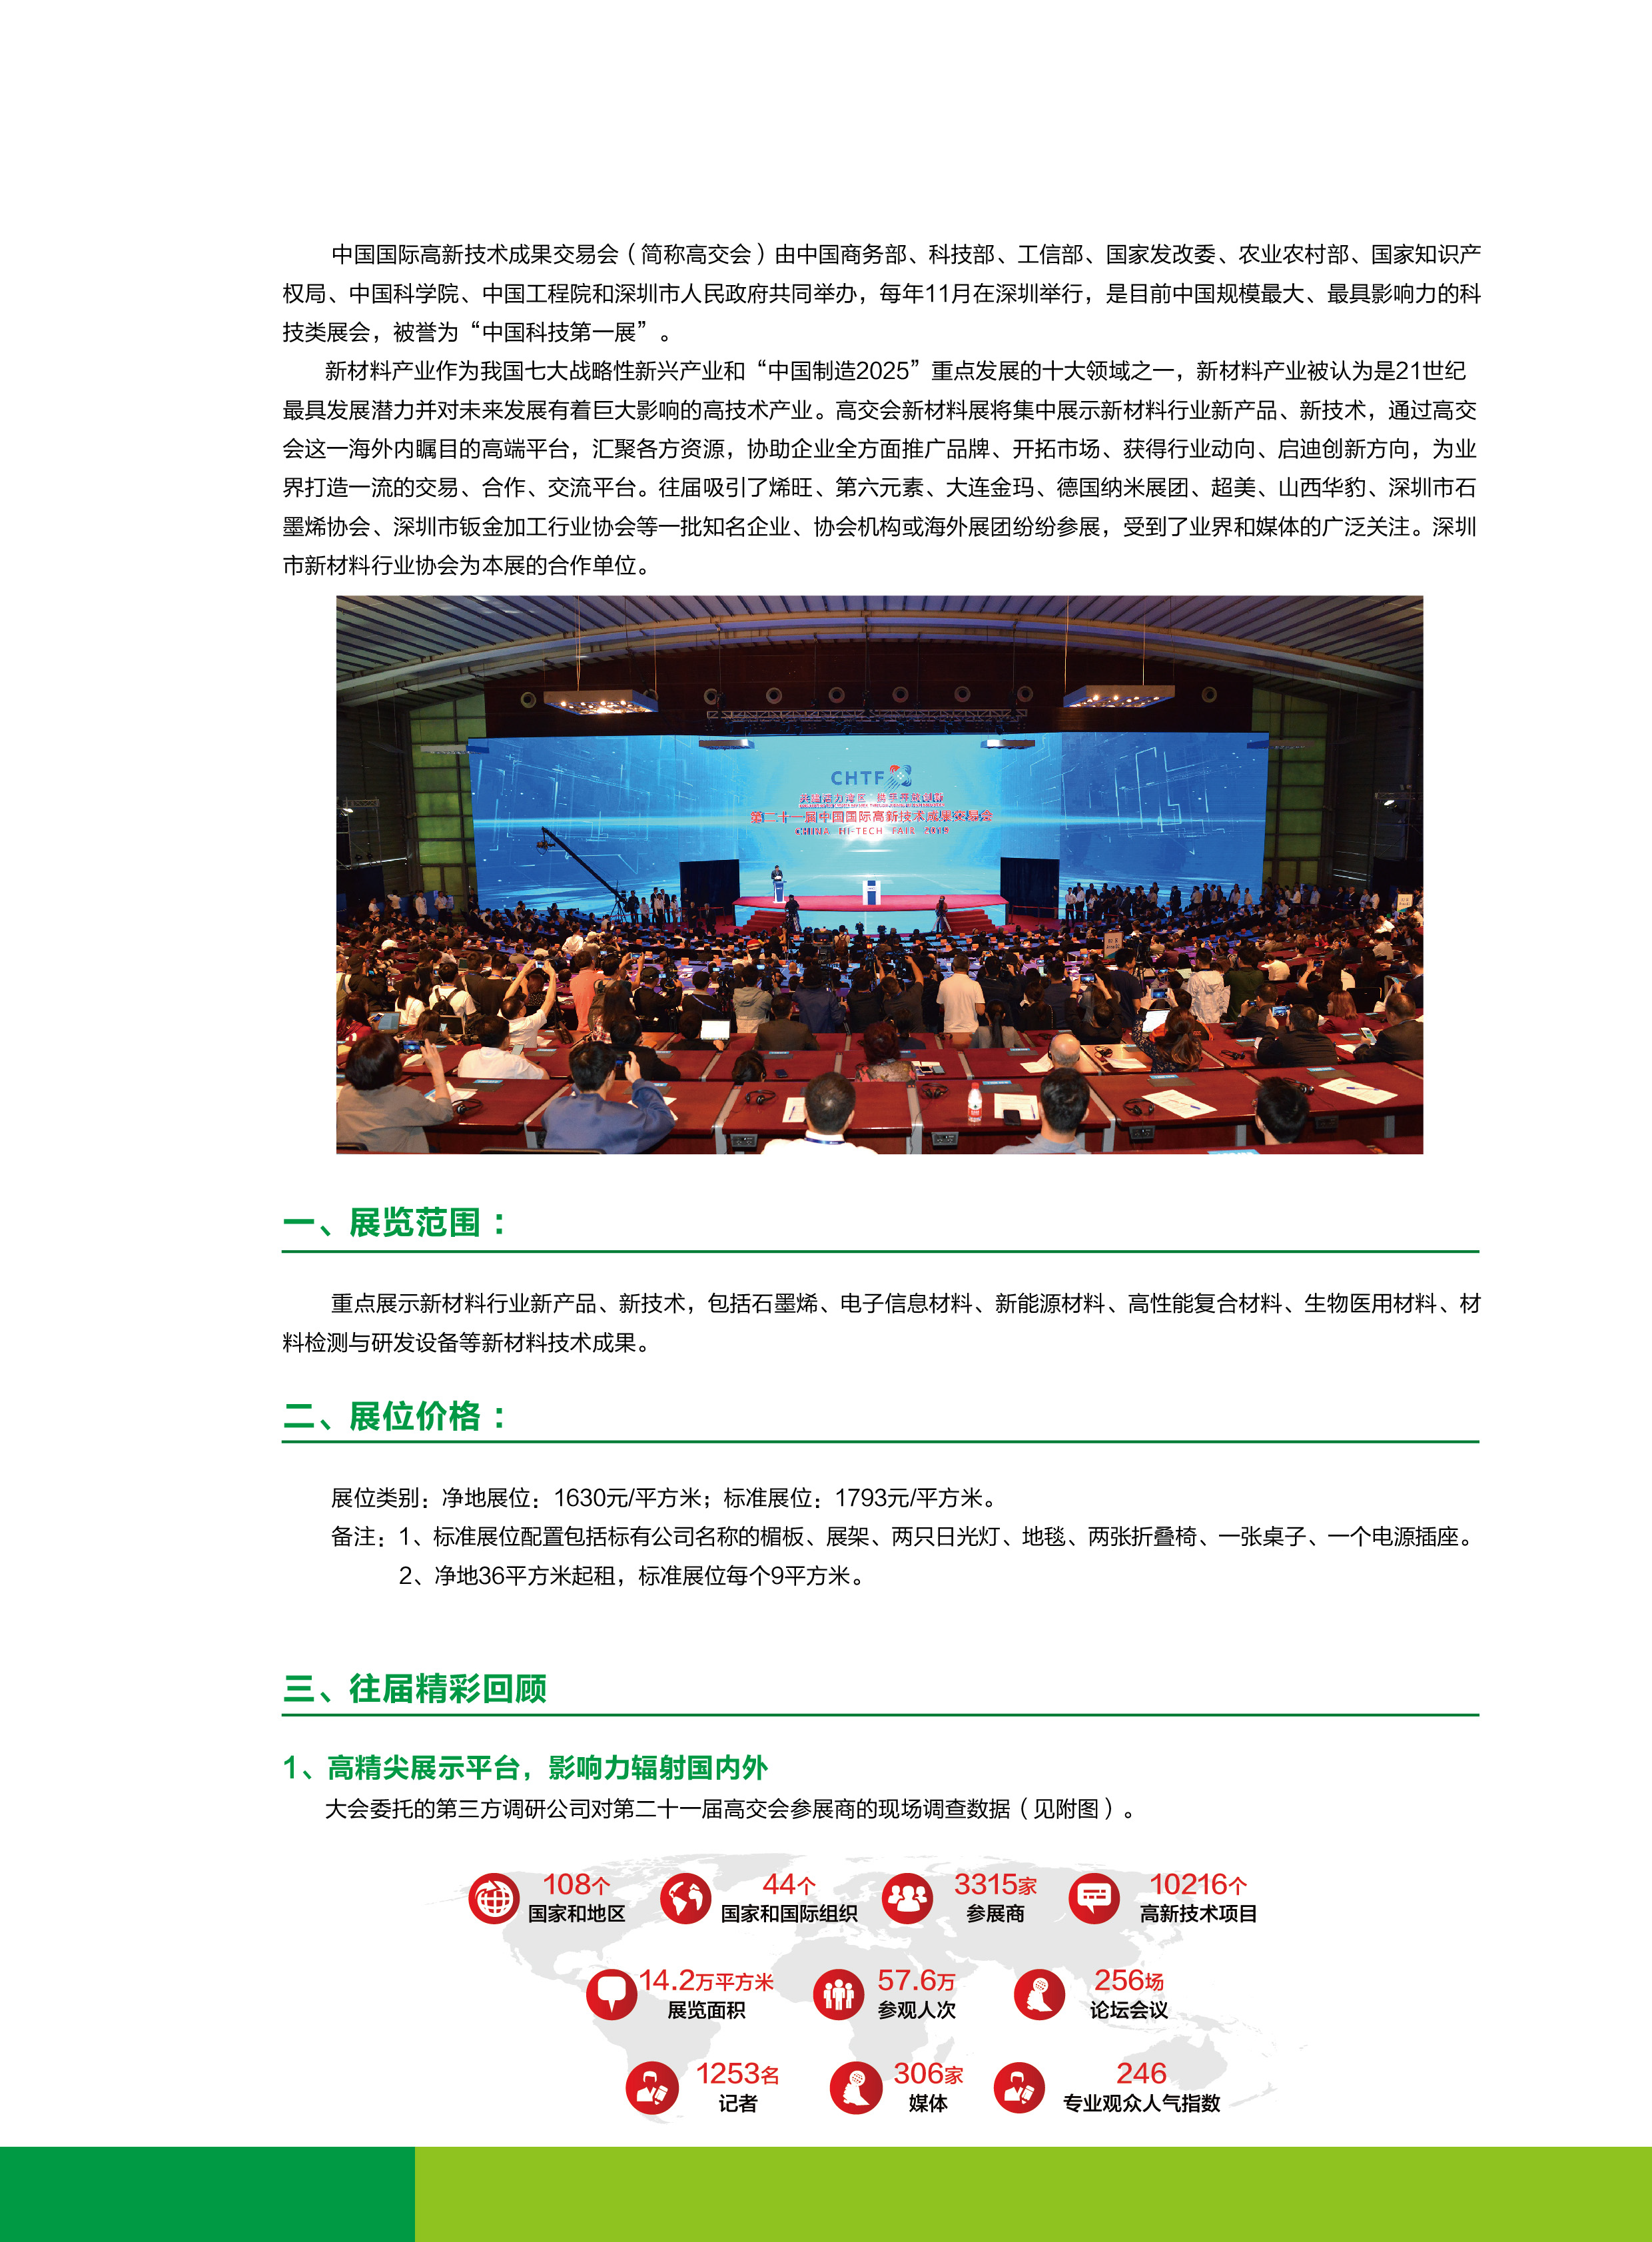 20200522-第22届高交会新材料展电子版_页面_2.png